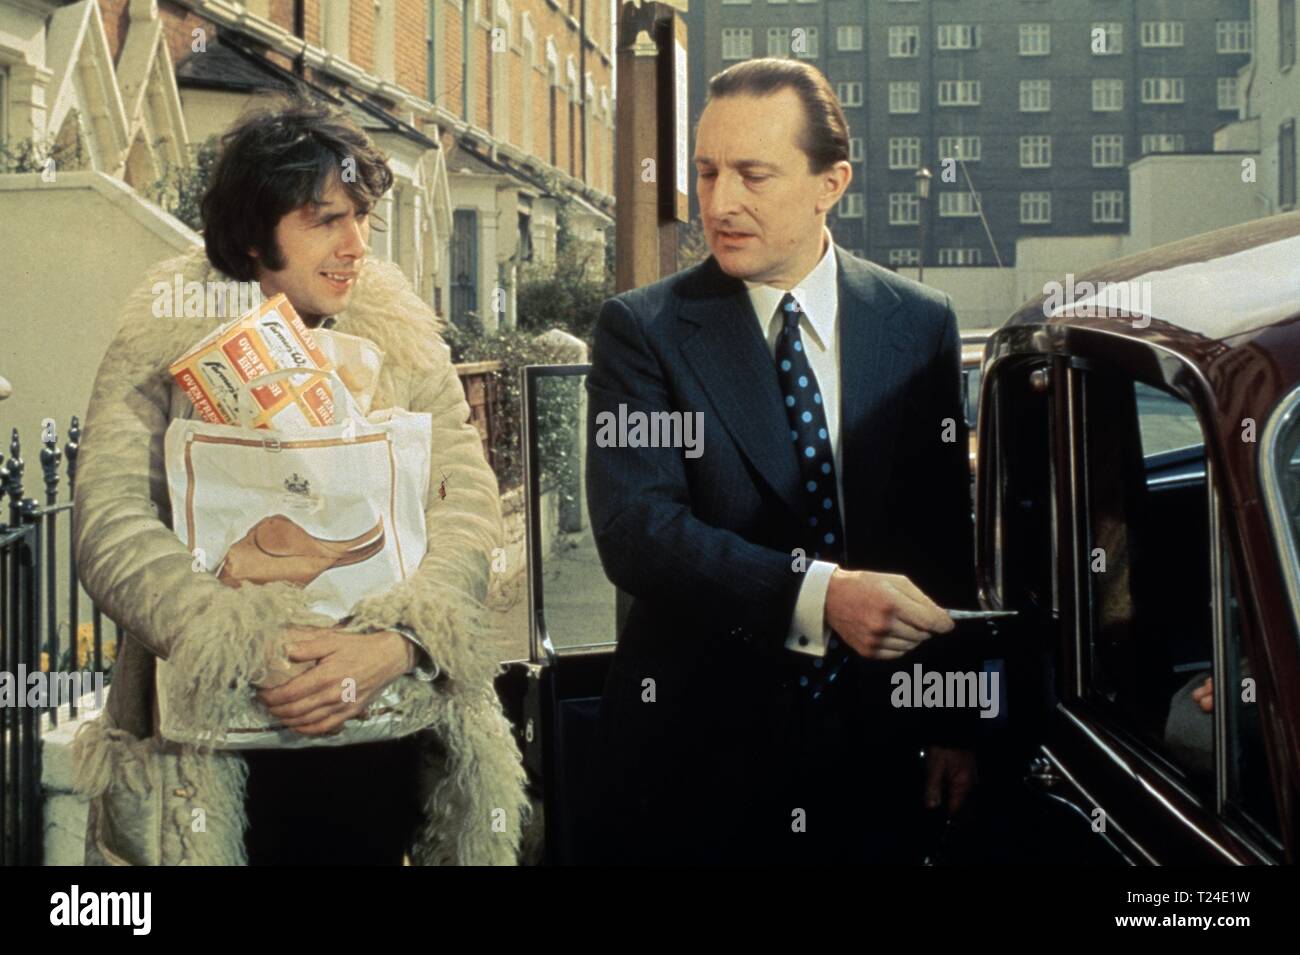 L'homme au sujet de la maison (1974) Richard O'Sullivan, Peter Cellier, Date : 1974 Banque D'Images